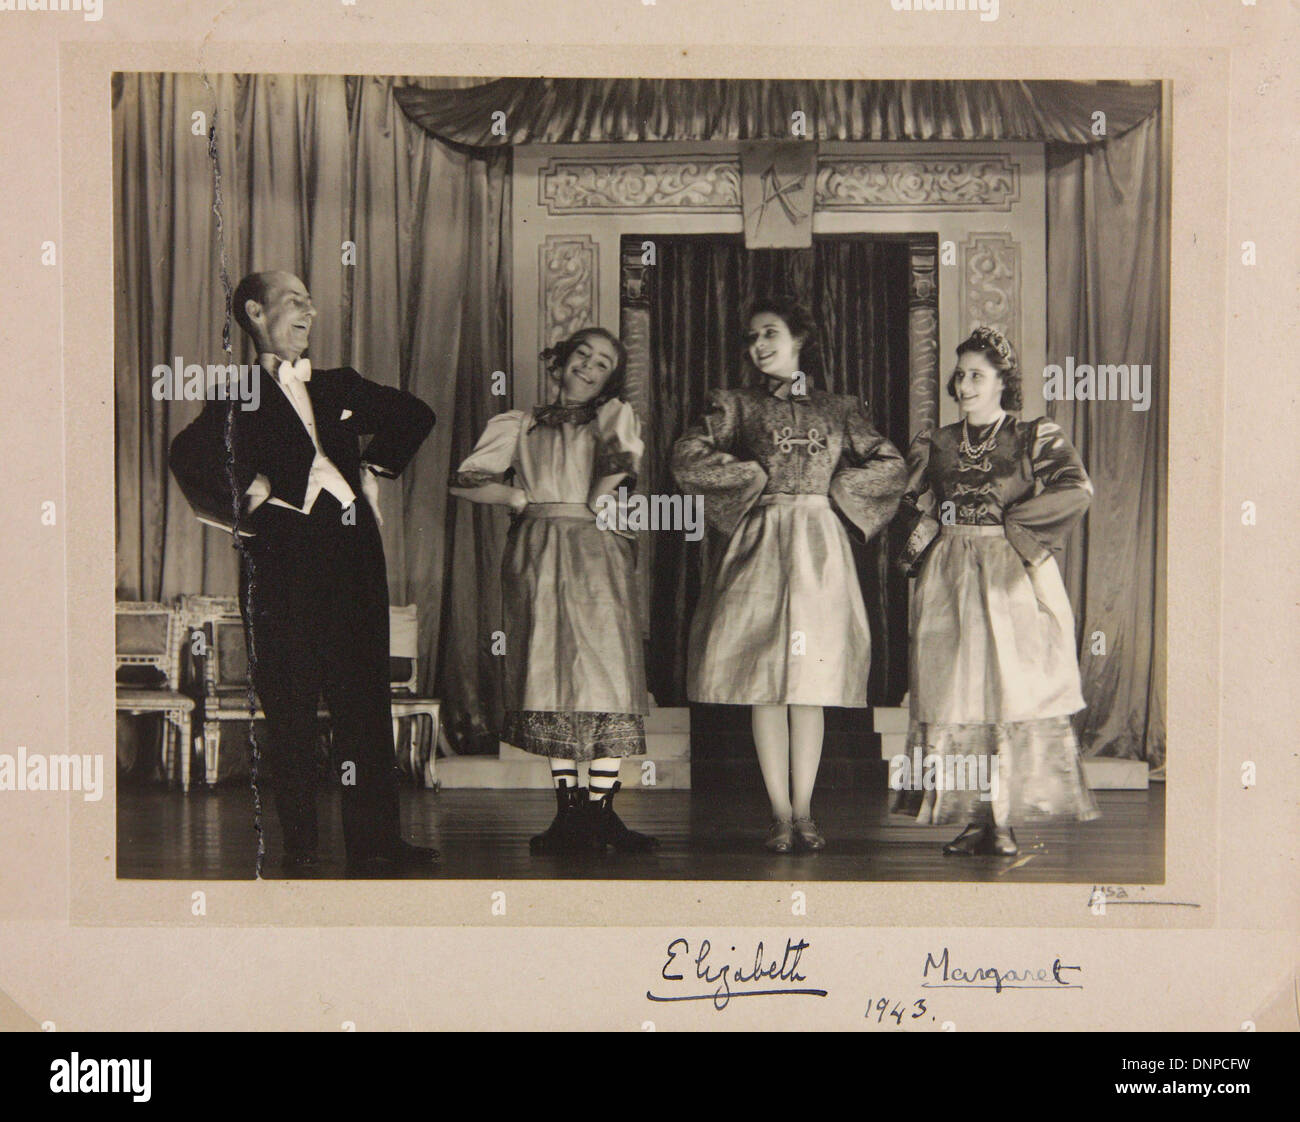 Une photographie signée de la princesse Margaret (à droite) et de la princesse Elizabeth (deuxième à droite) dans le jeu Aladdin, 1943 Banque D'Images